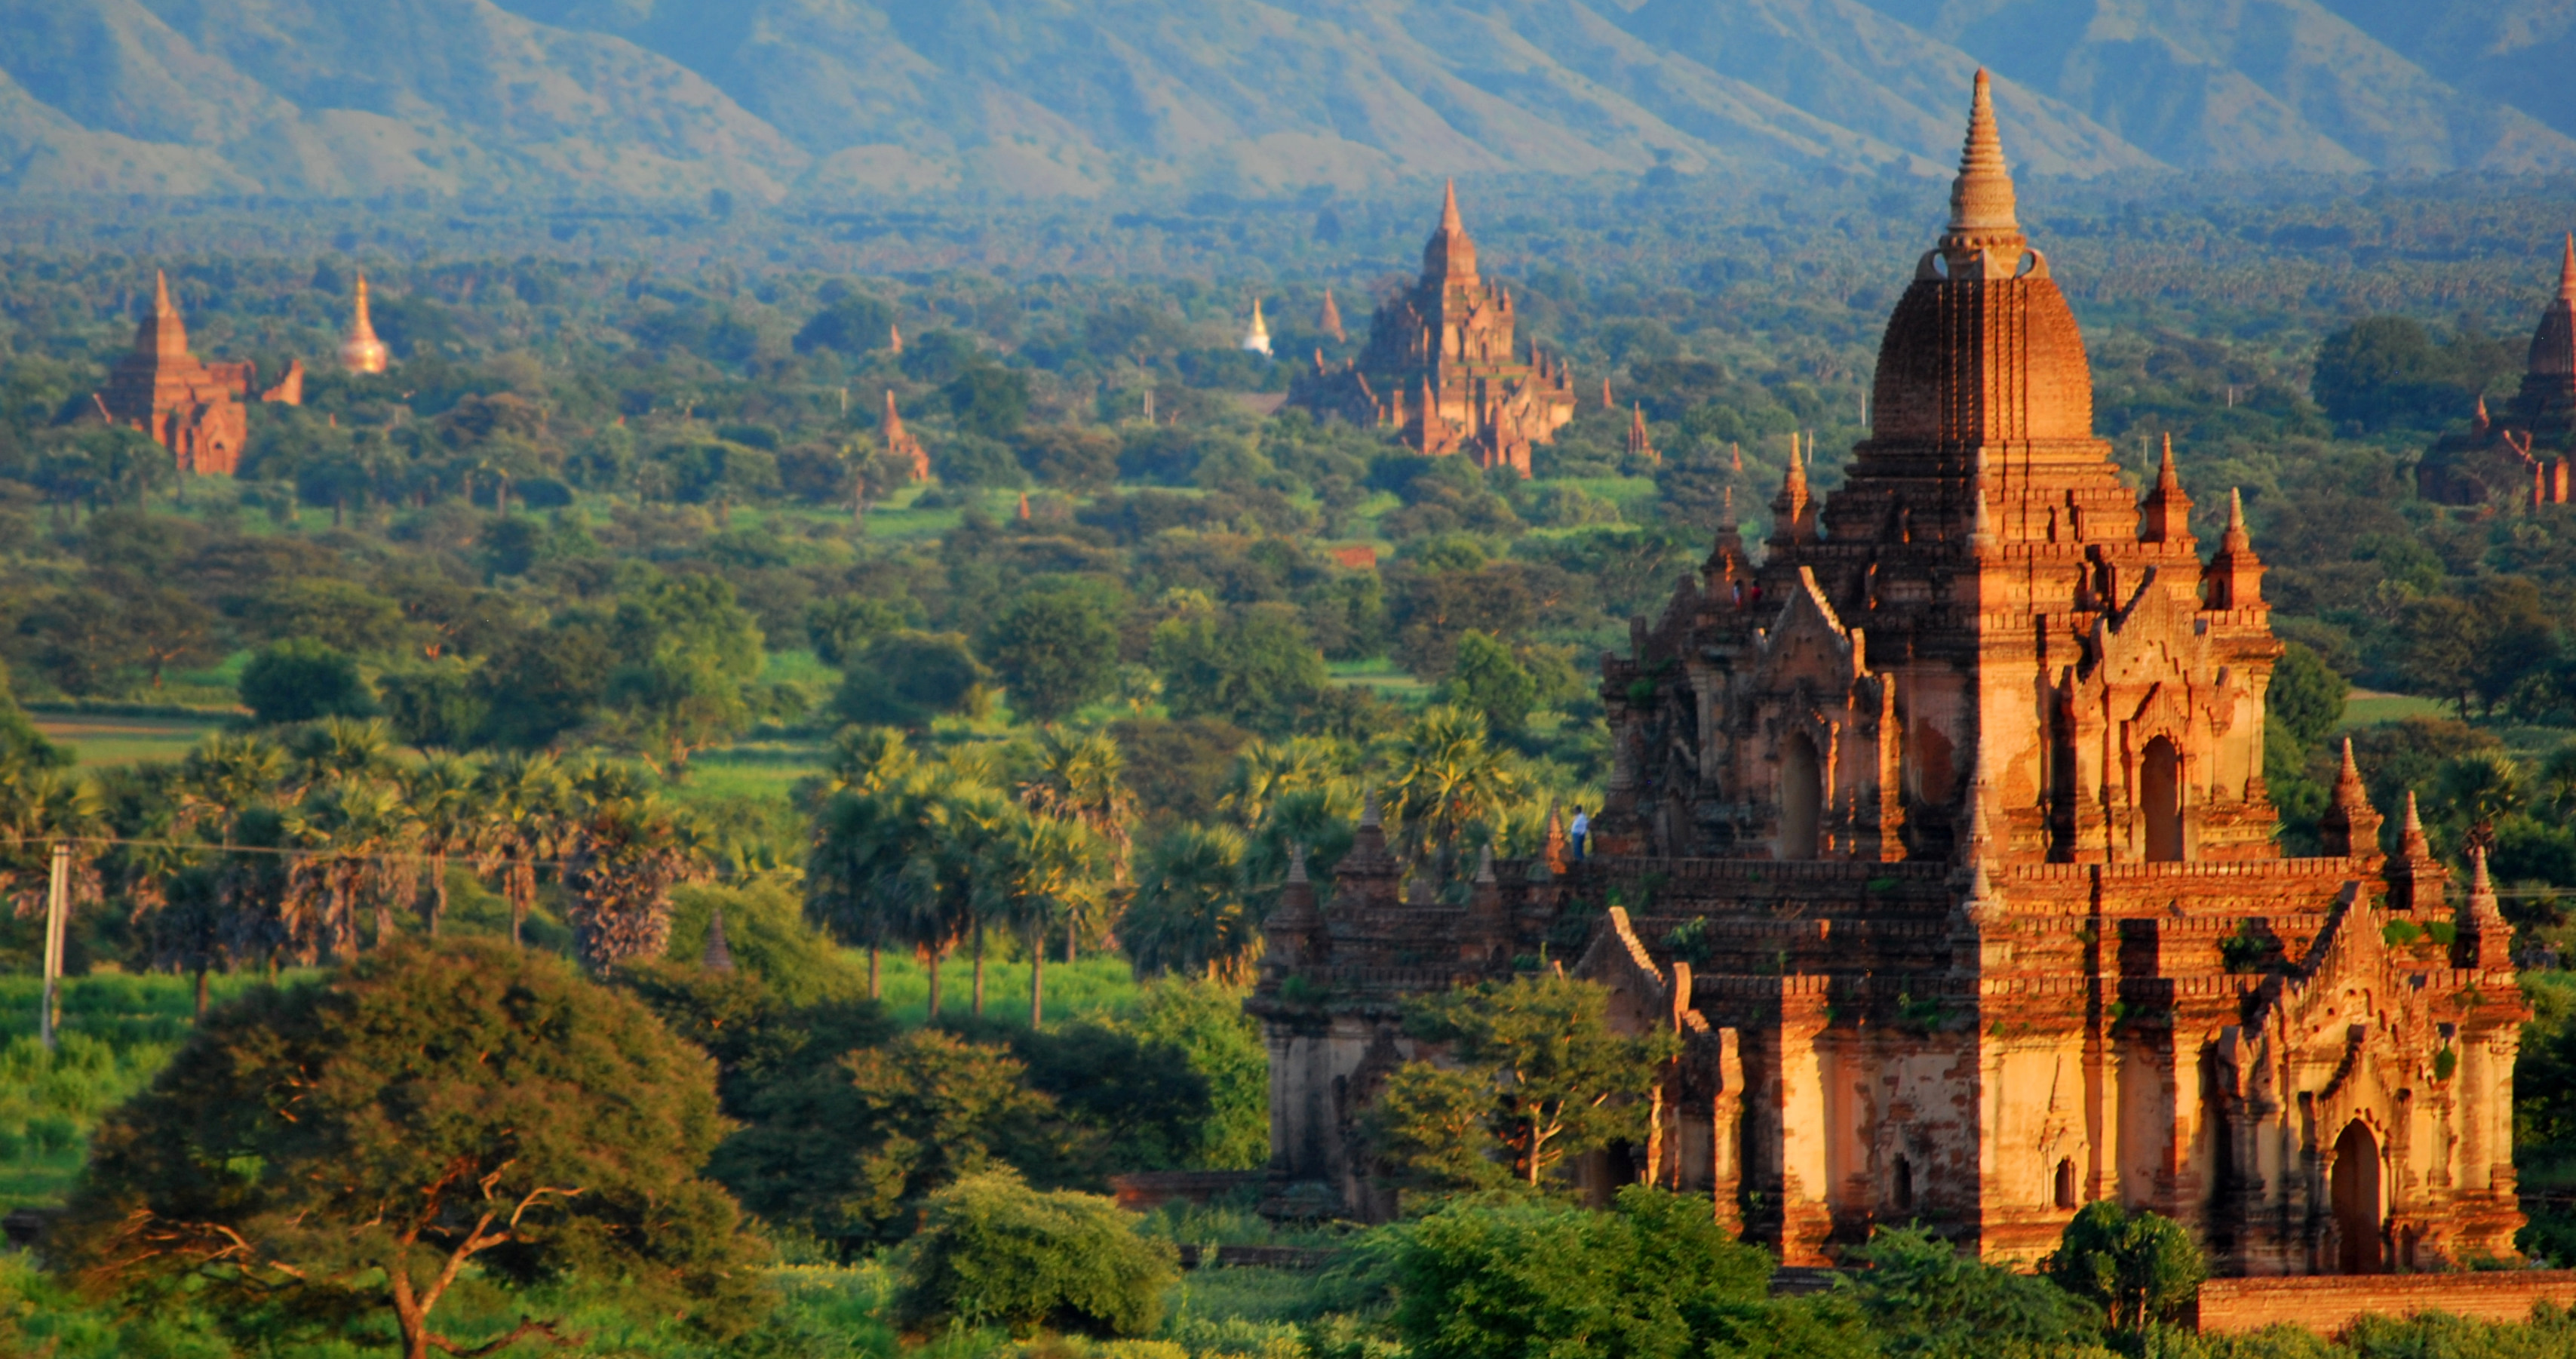 Bagan wallpapers, Man-made structures, Bagan photography, 4K images, 3420x1810 HD Desktop